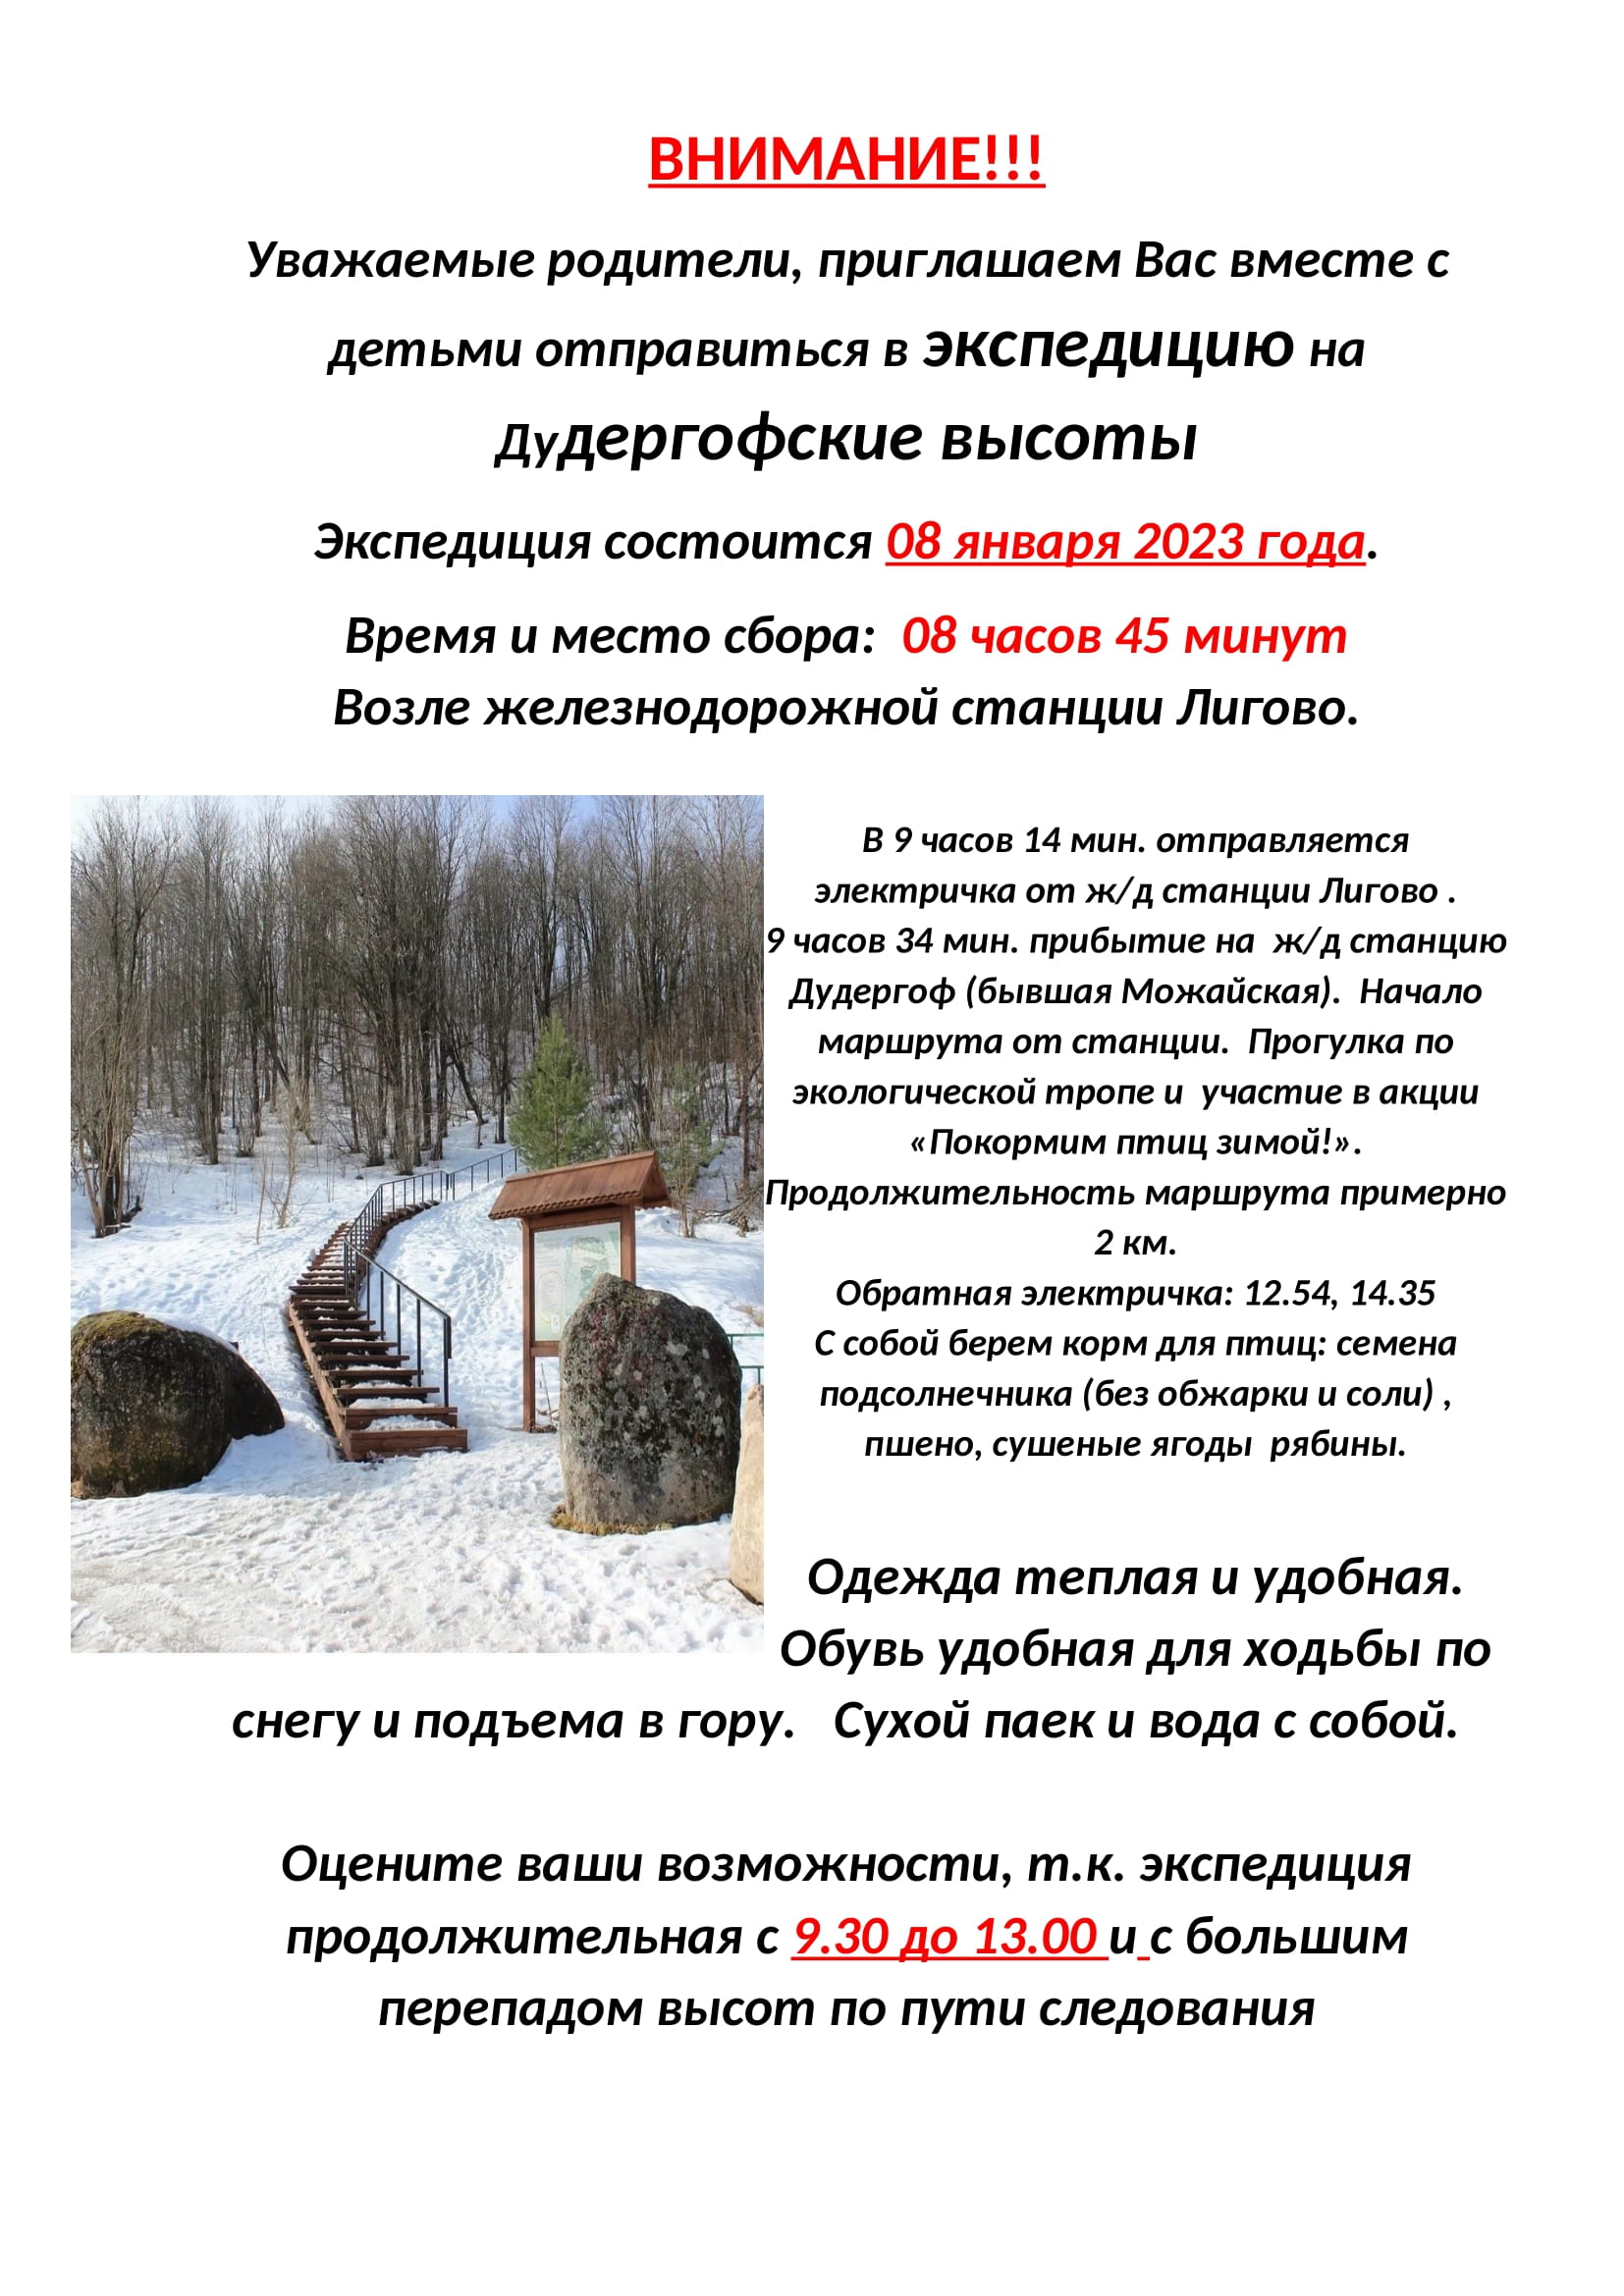 Объявление Дудергофские высоты - 2- 8 января 2023-1